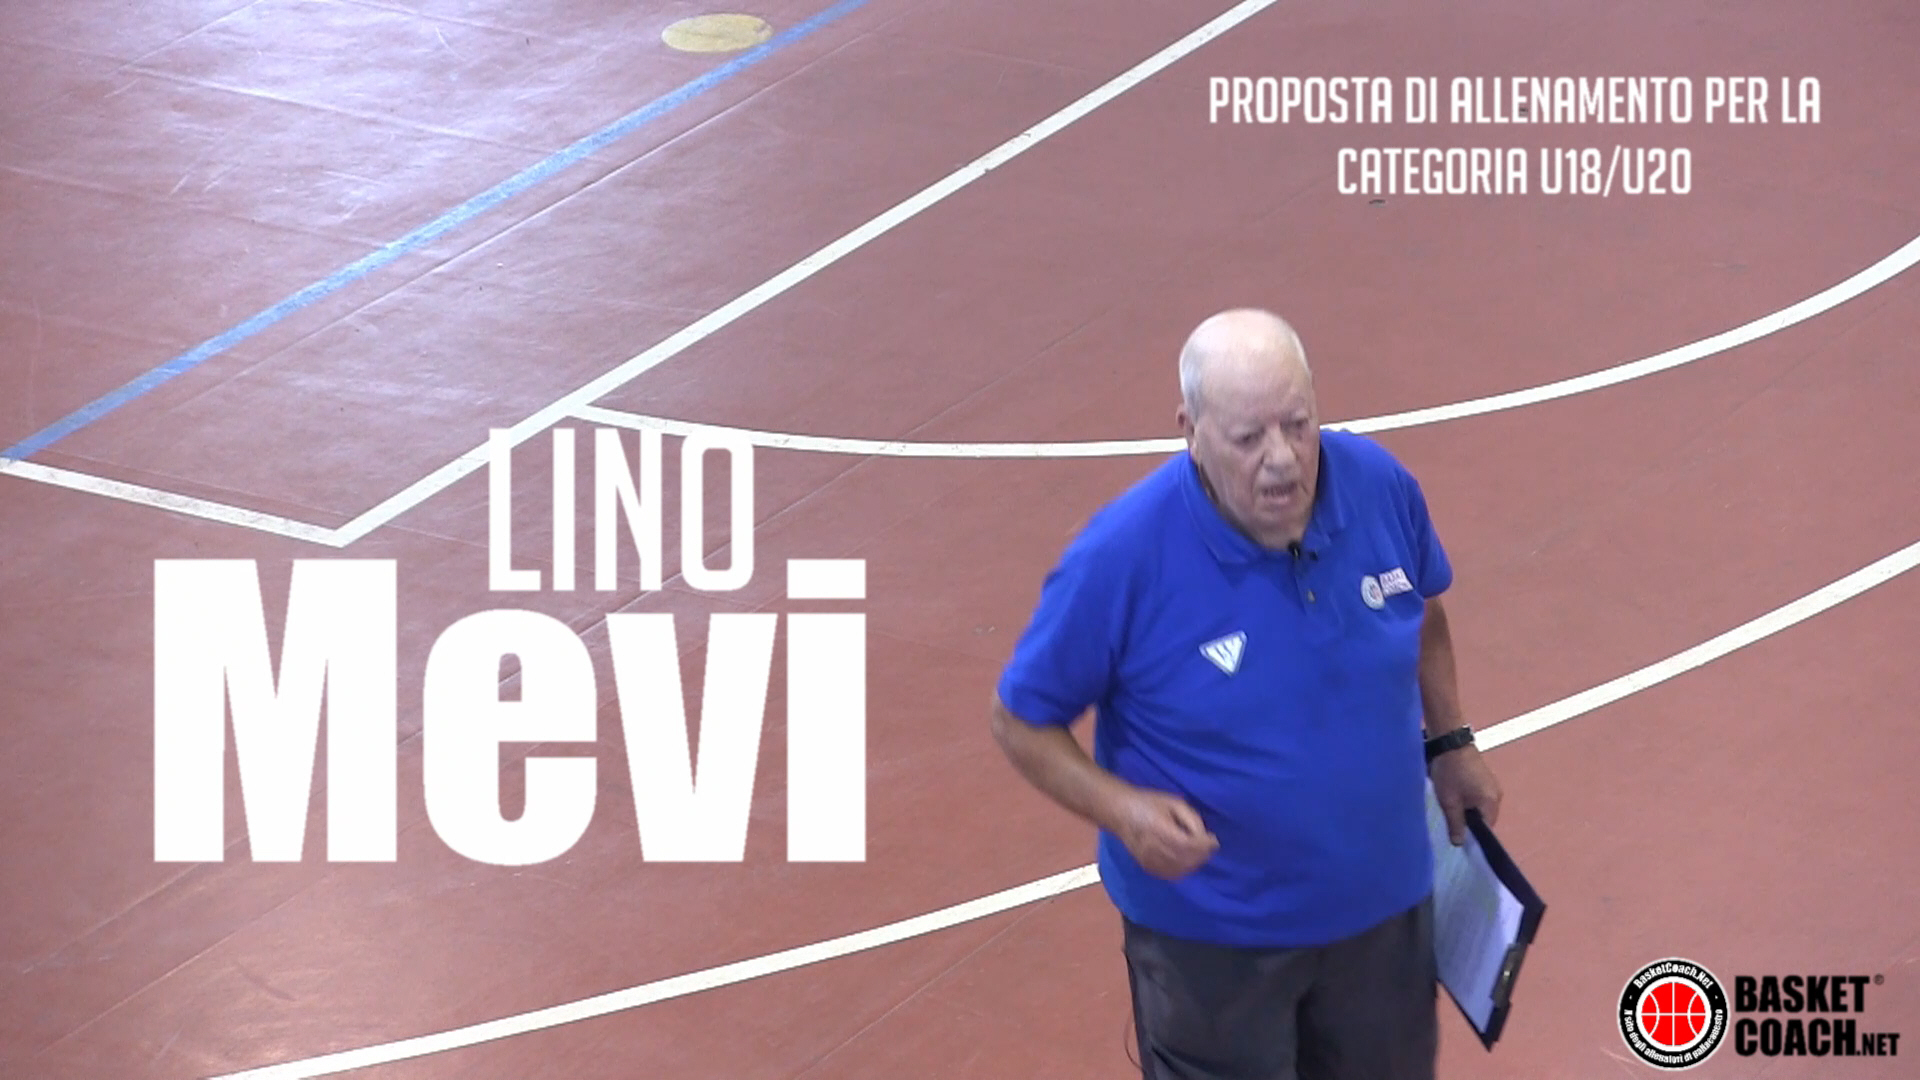 <p>Lino Mevi - Proposta di allenamento per la categoria under 18 - under 20</p>
